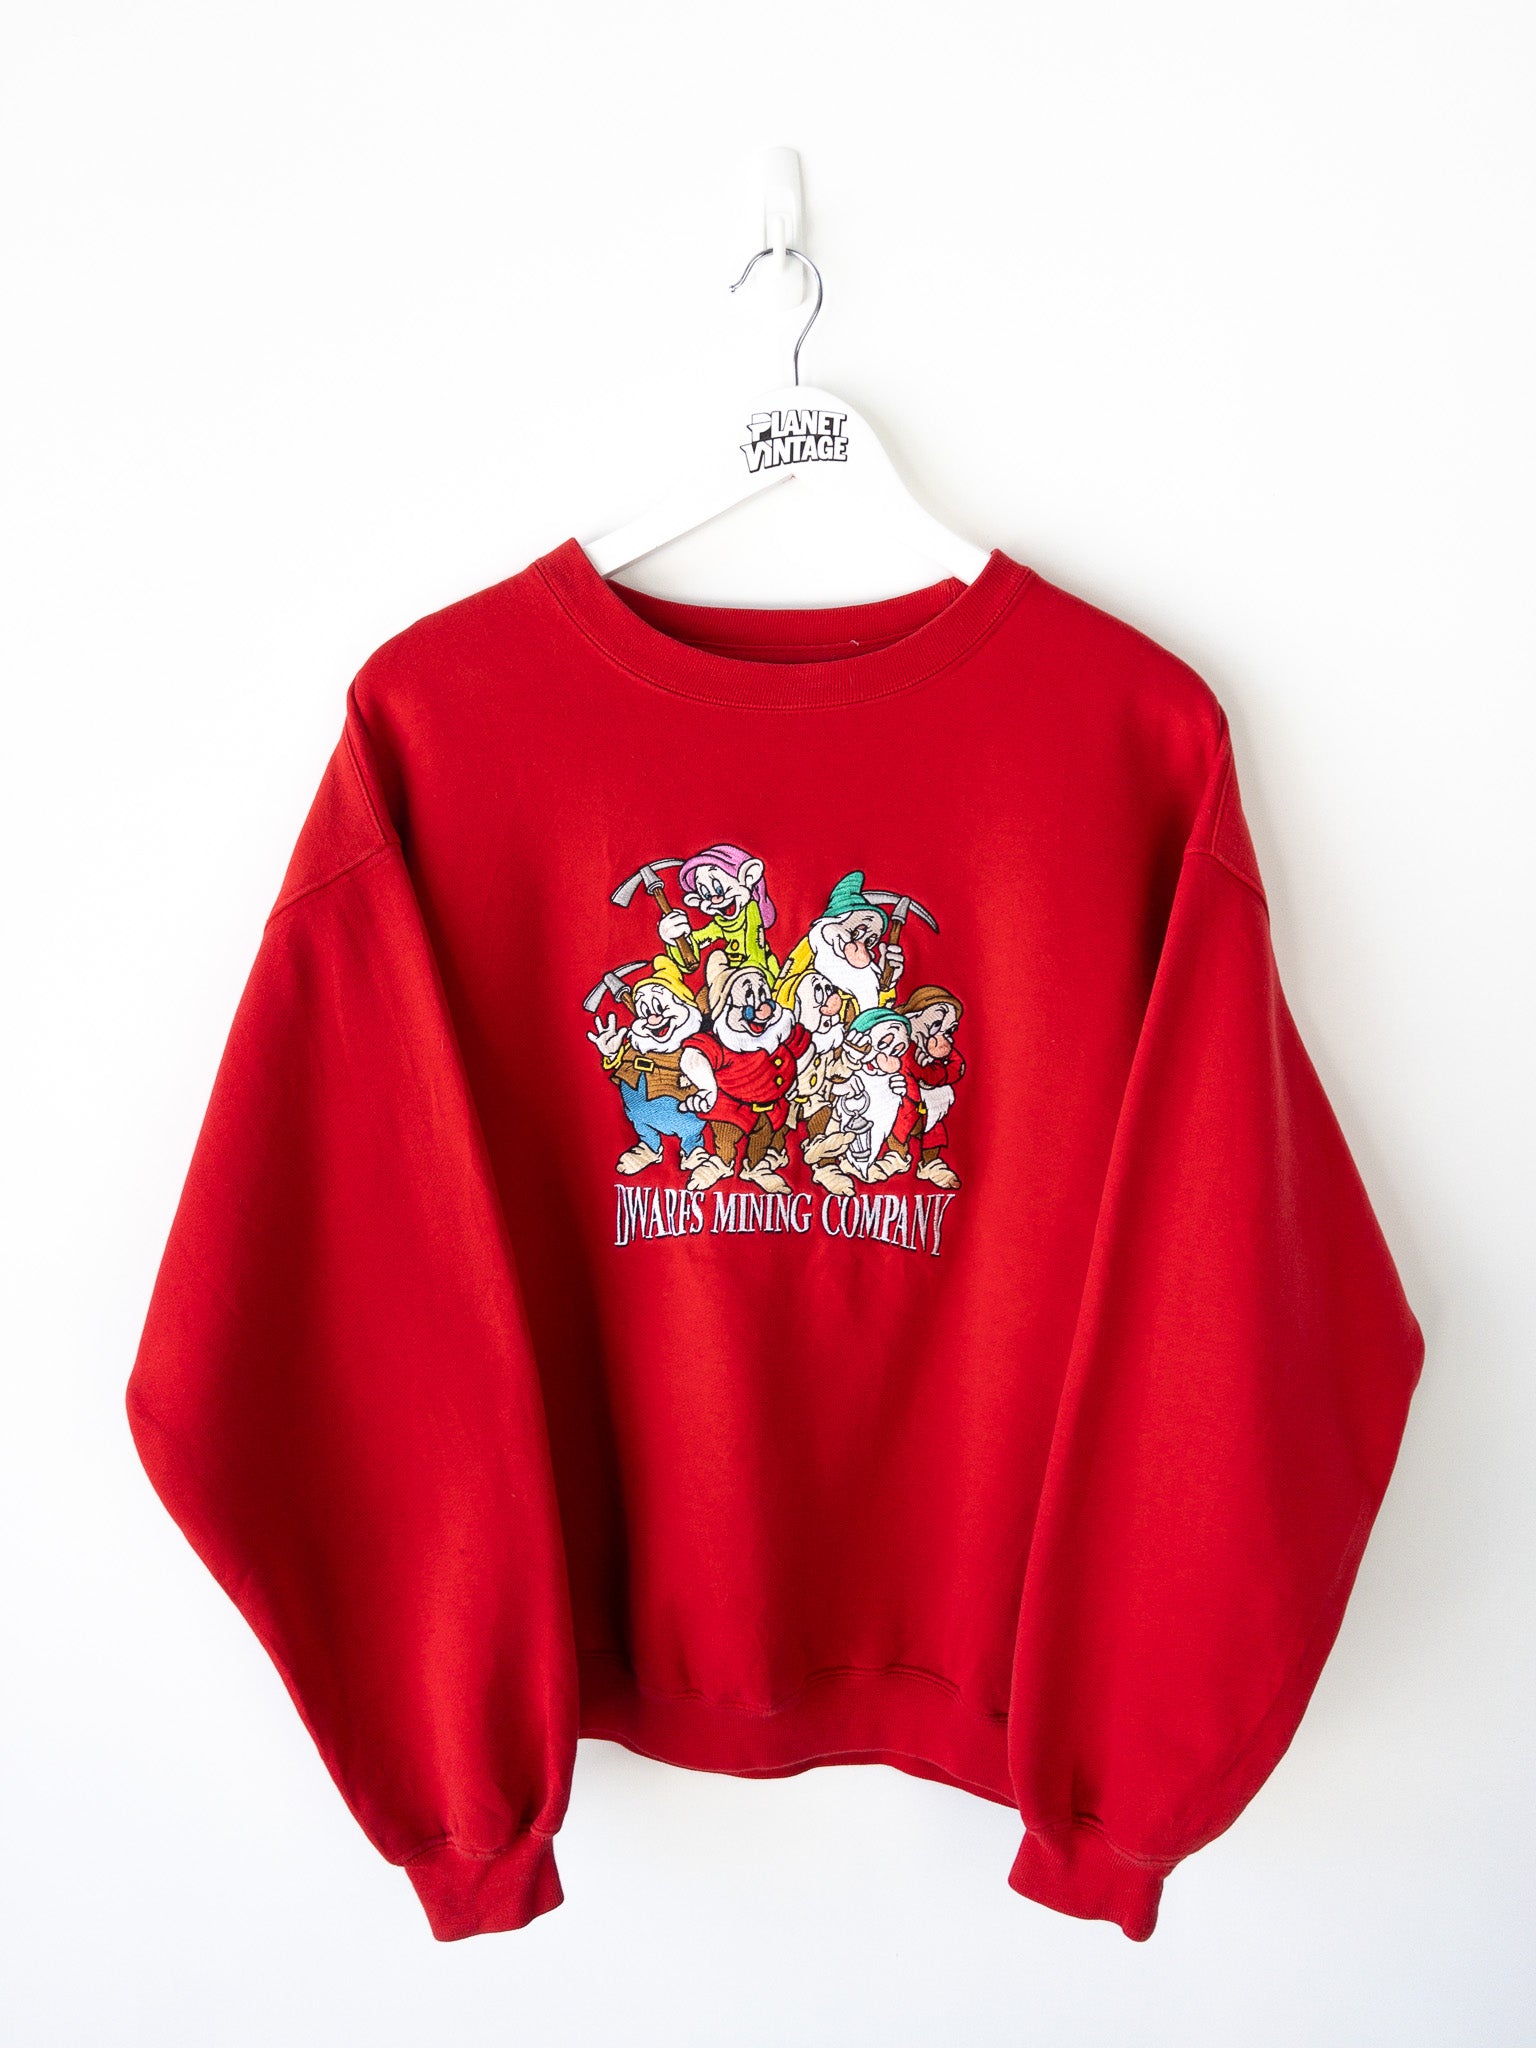 Vintage Dwarfs Mining Company Sweatshirt (L)